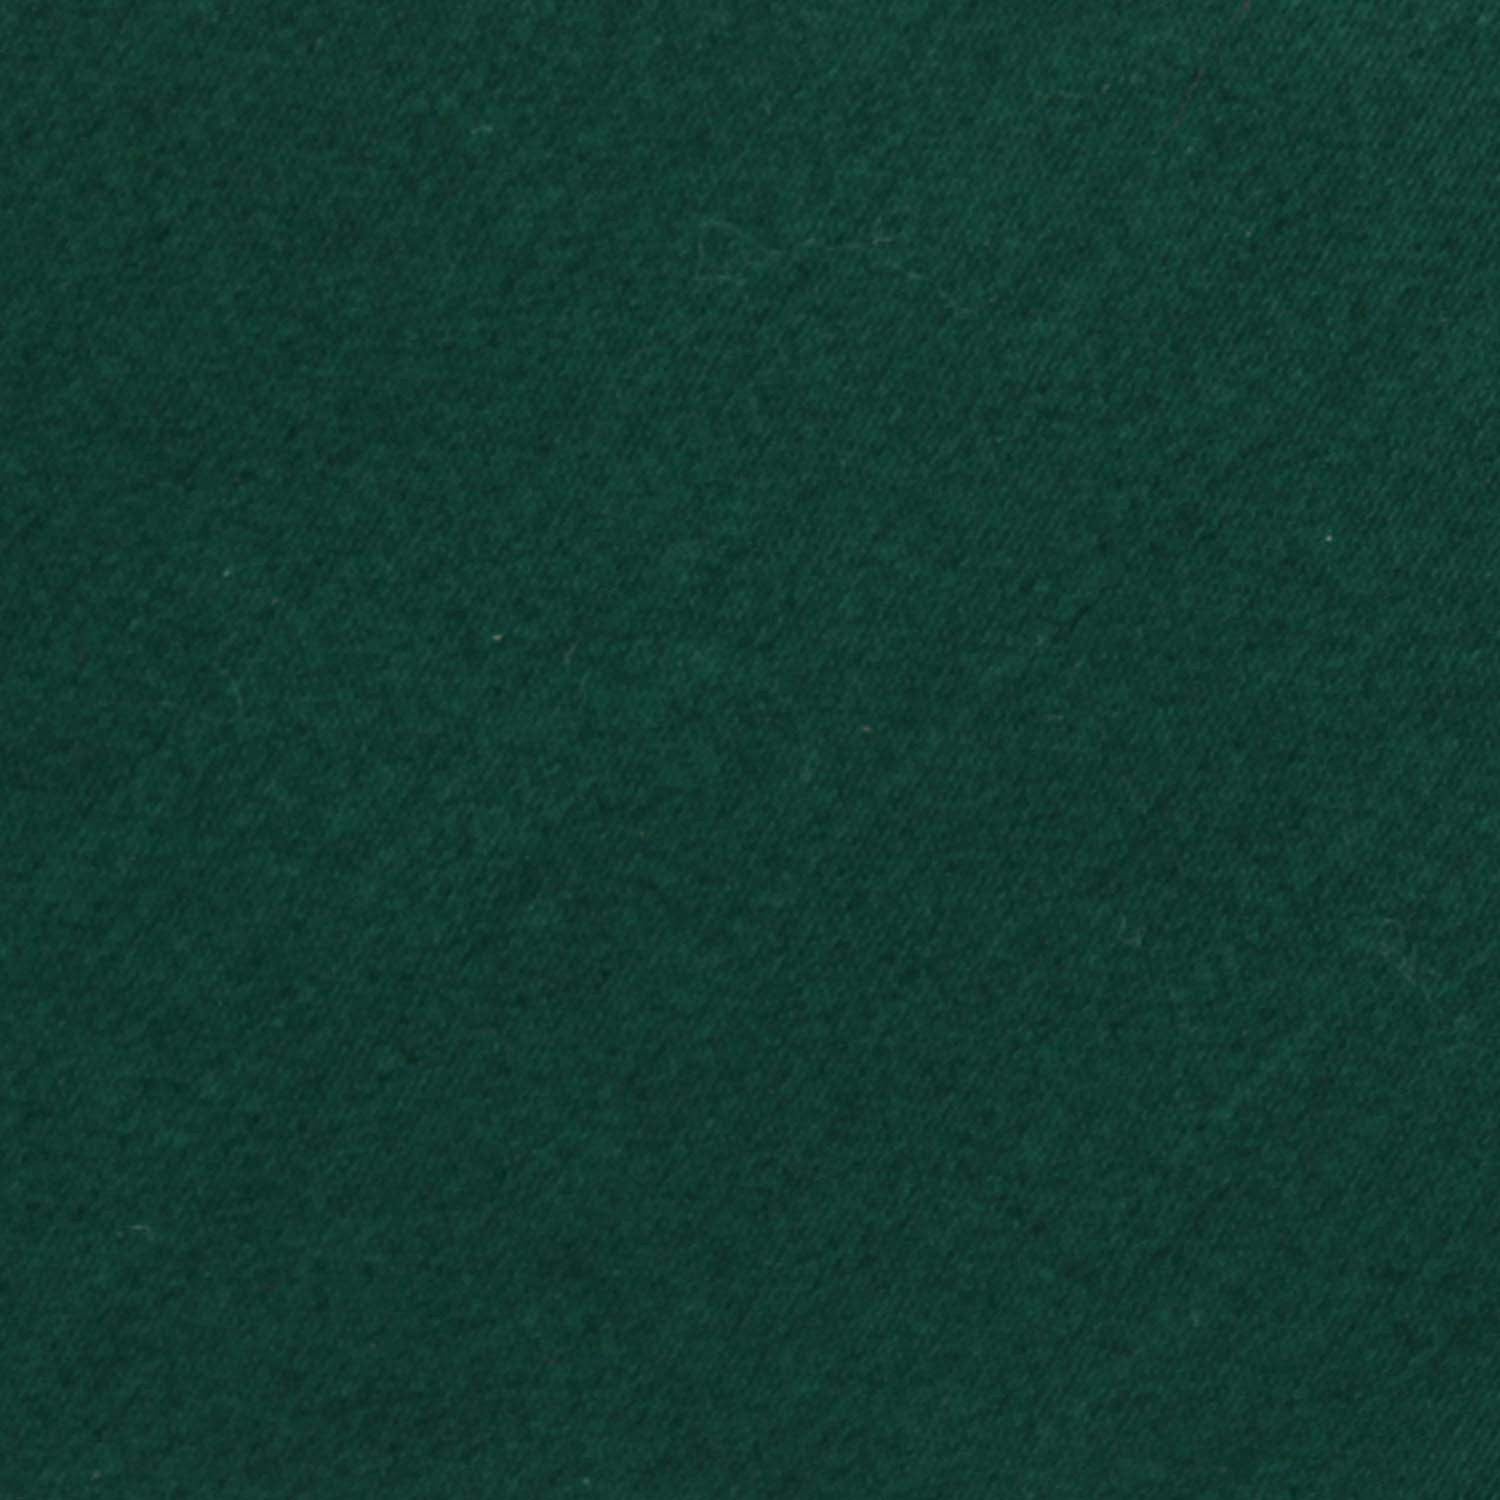 Emerald Green Cotton Fabric Necktie C162